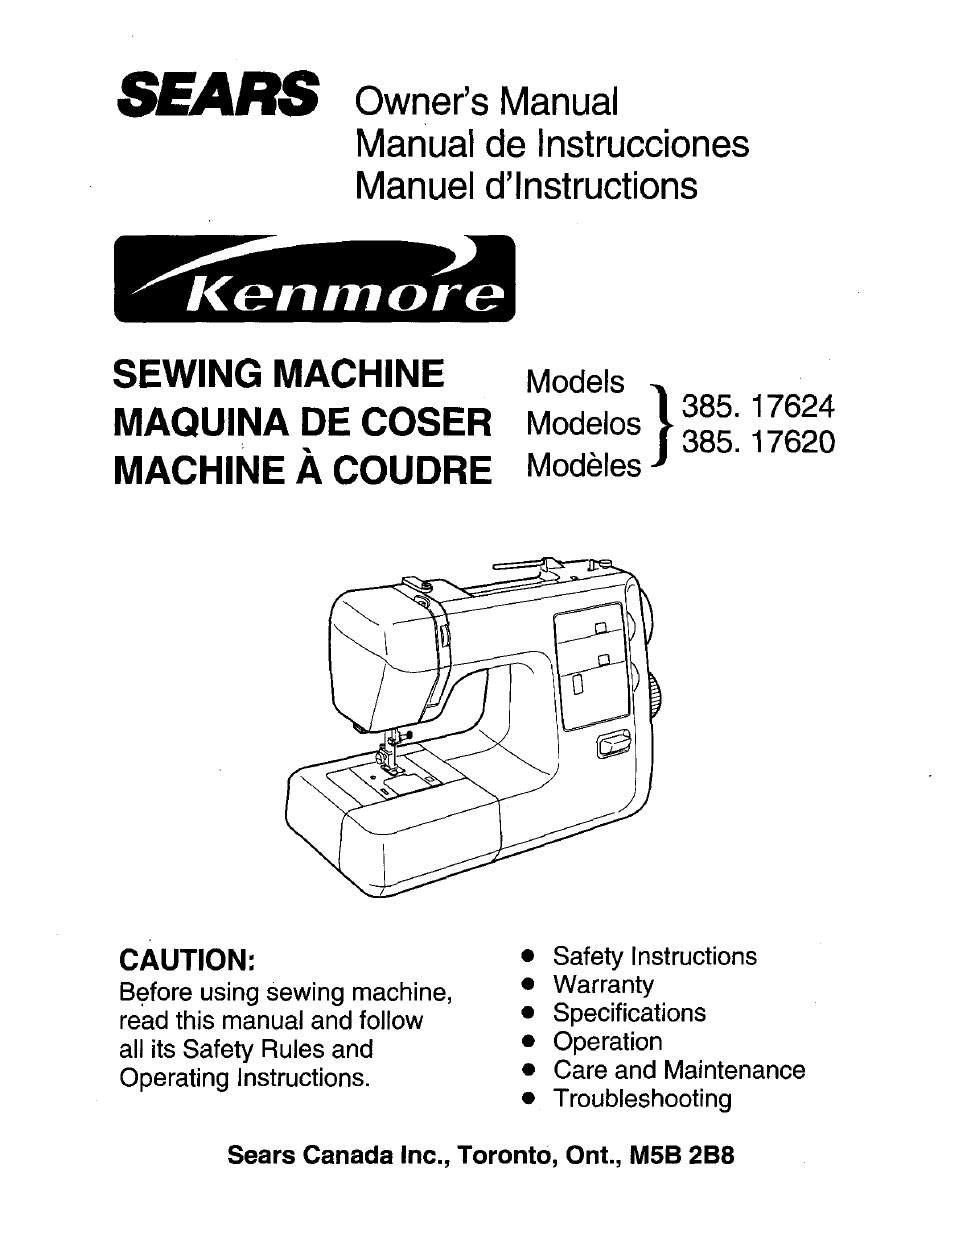 Free kenmore sewing manual 385